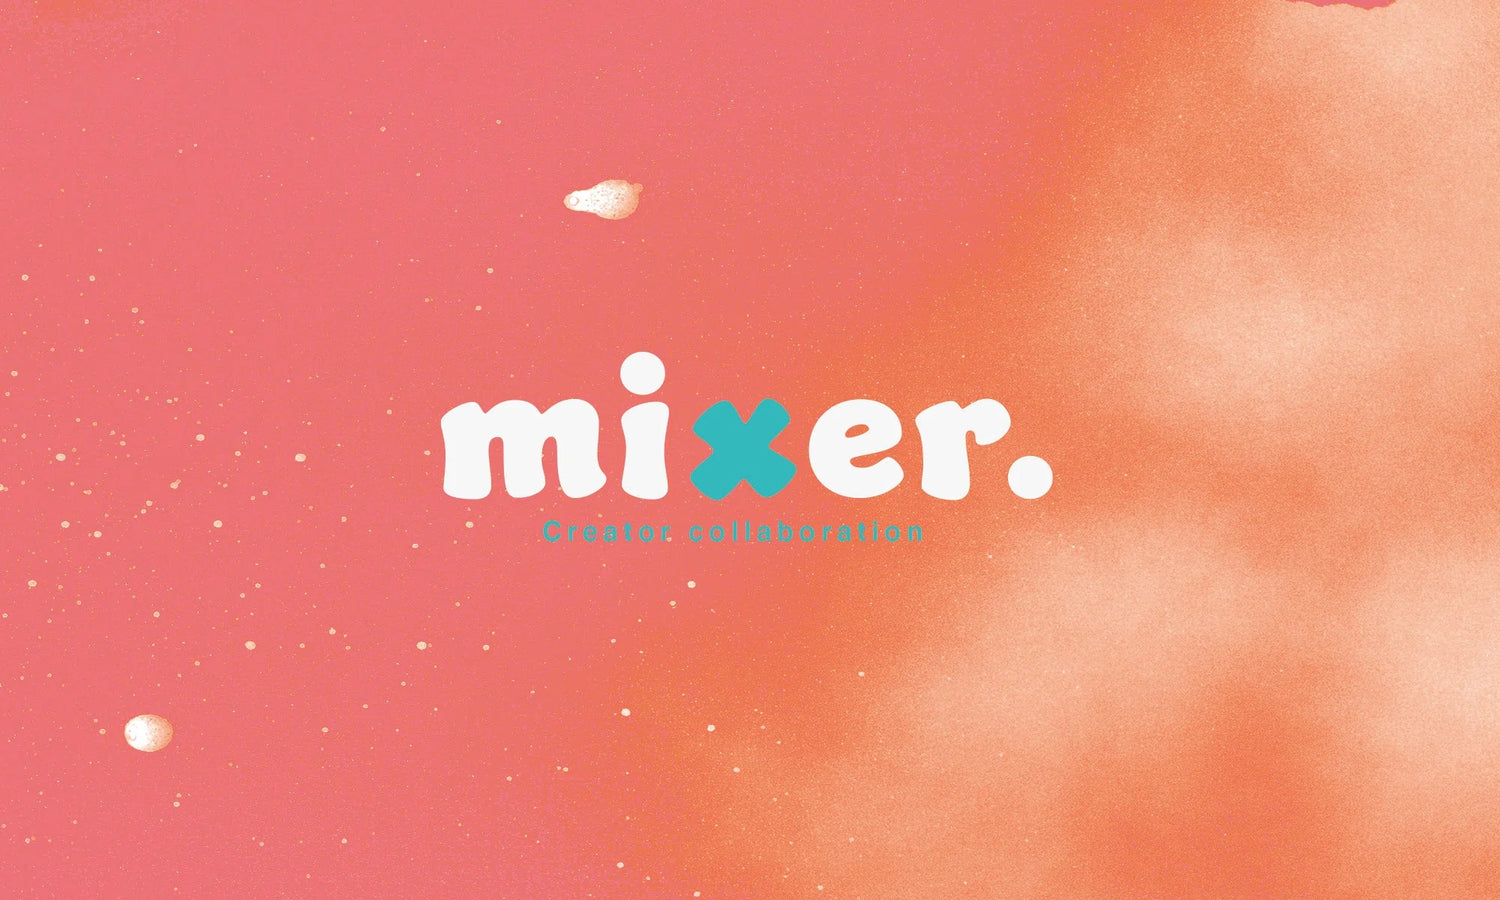 mixer.